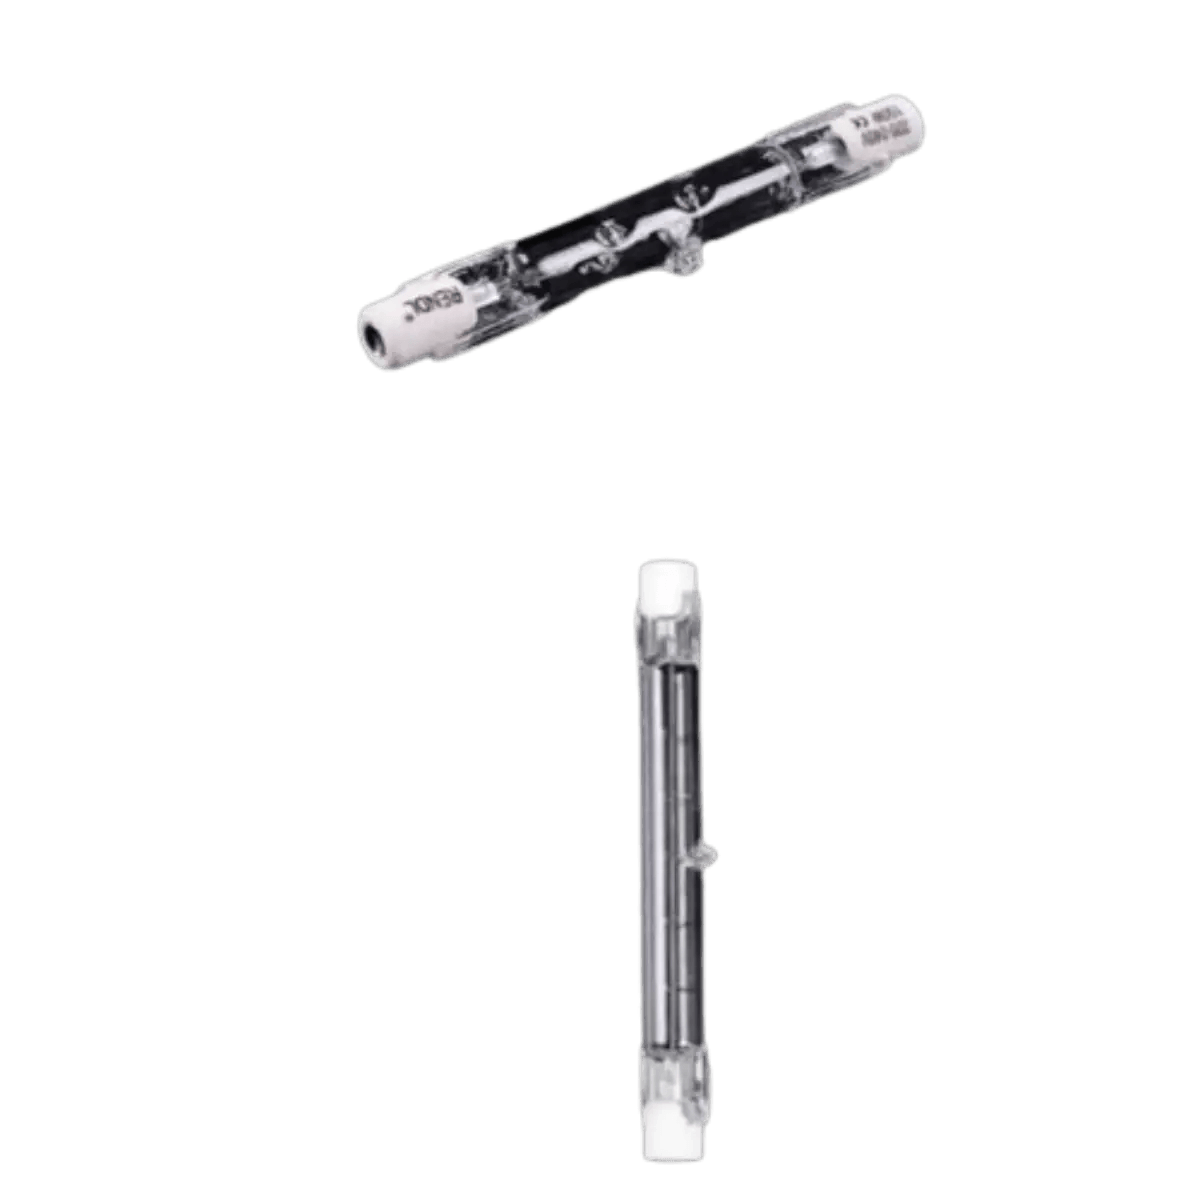 Accessoires Energie - Ampoules Halogène G9 - 53w